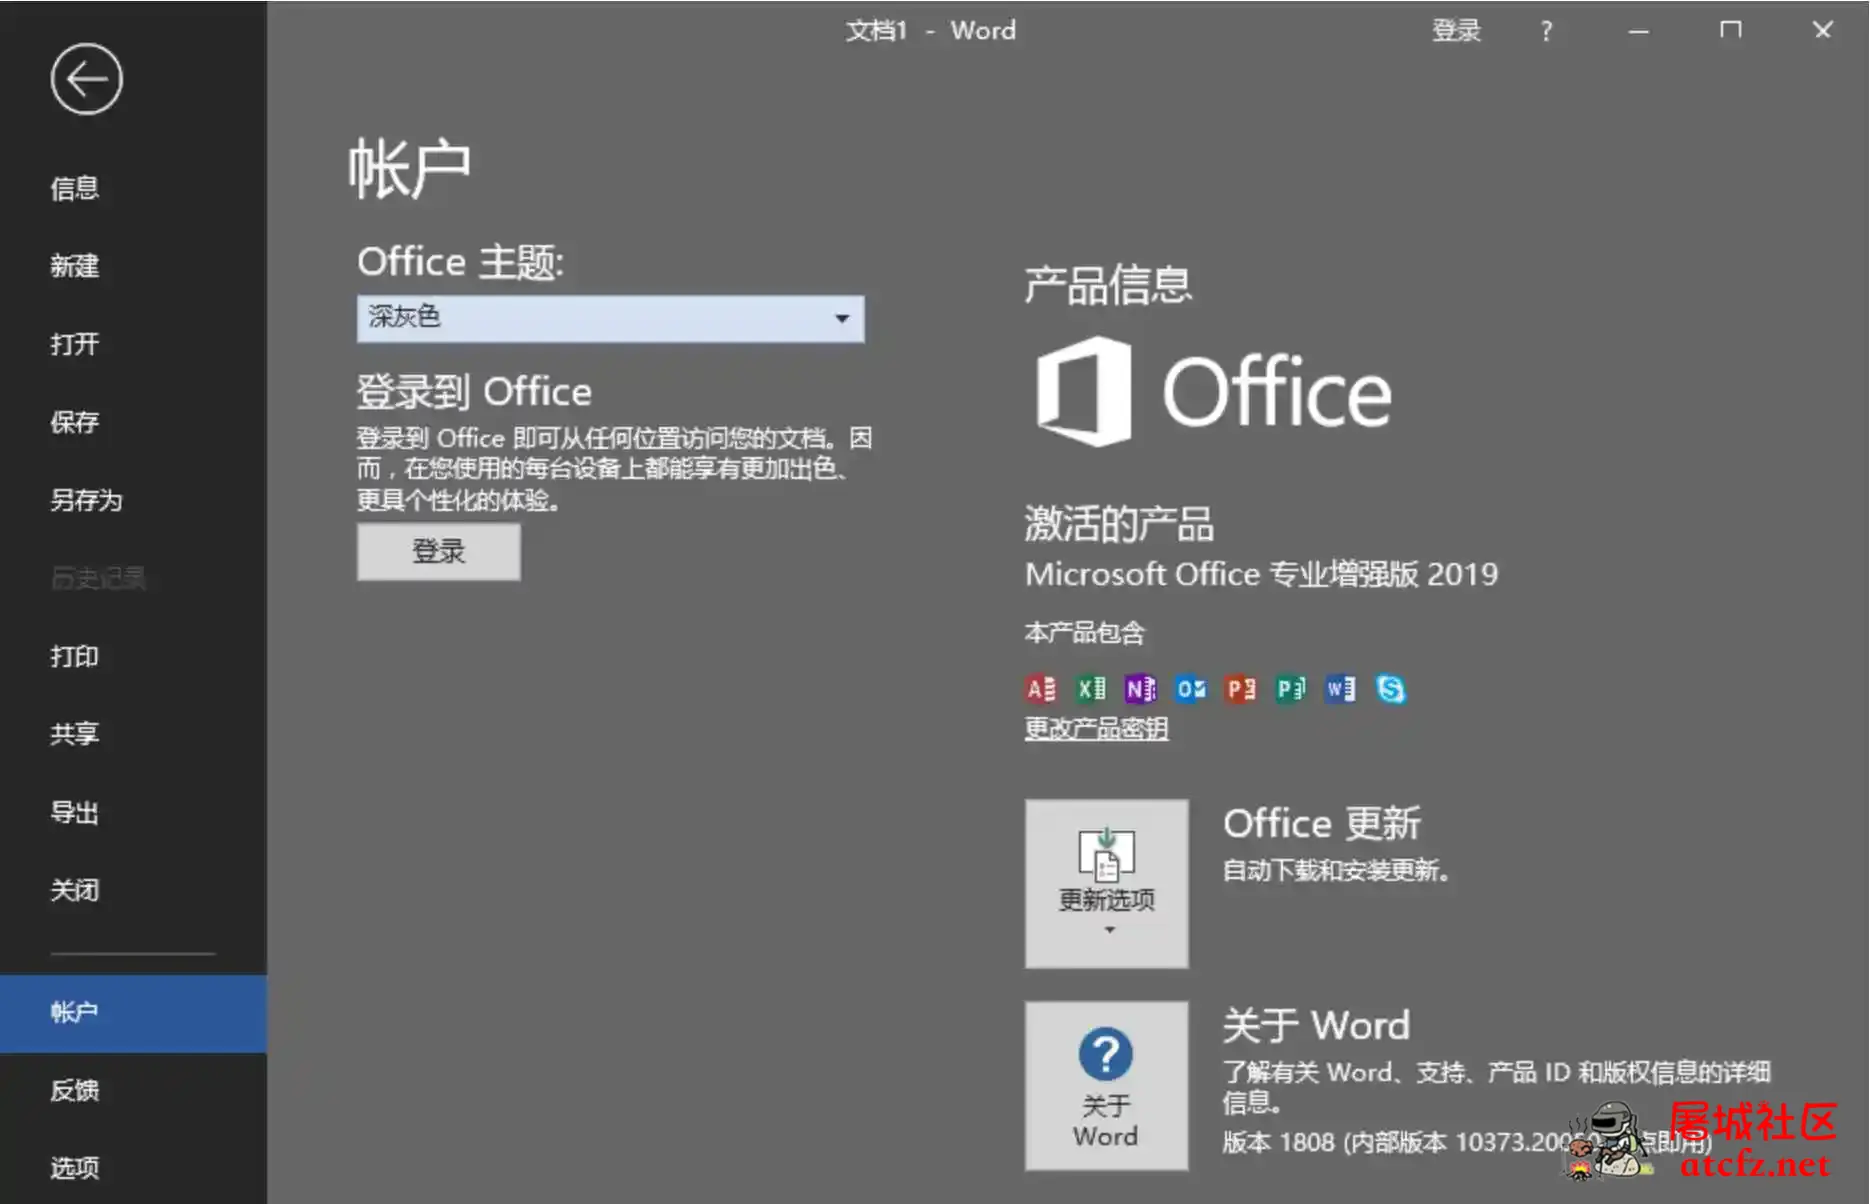 微软Office2019批量授权版批量授权商业版工具 屠城辅助网www.tcfz1.com7433